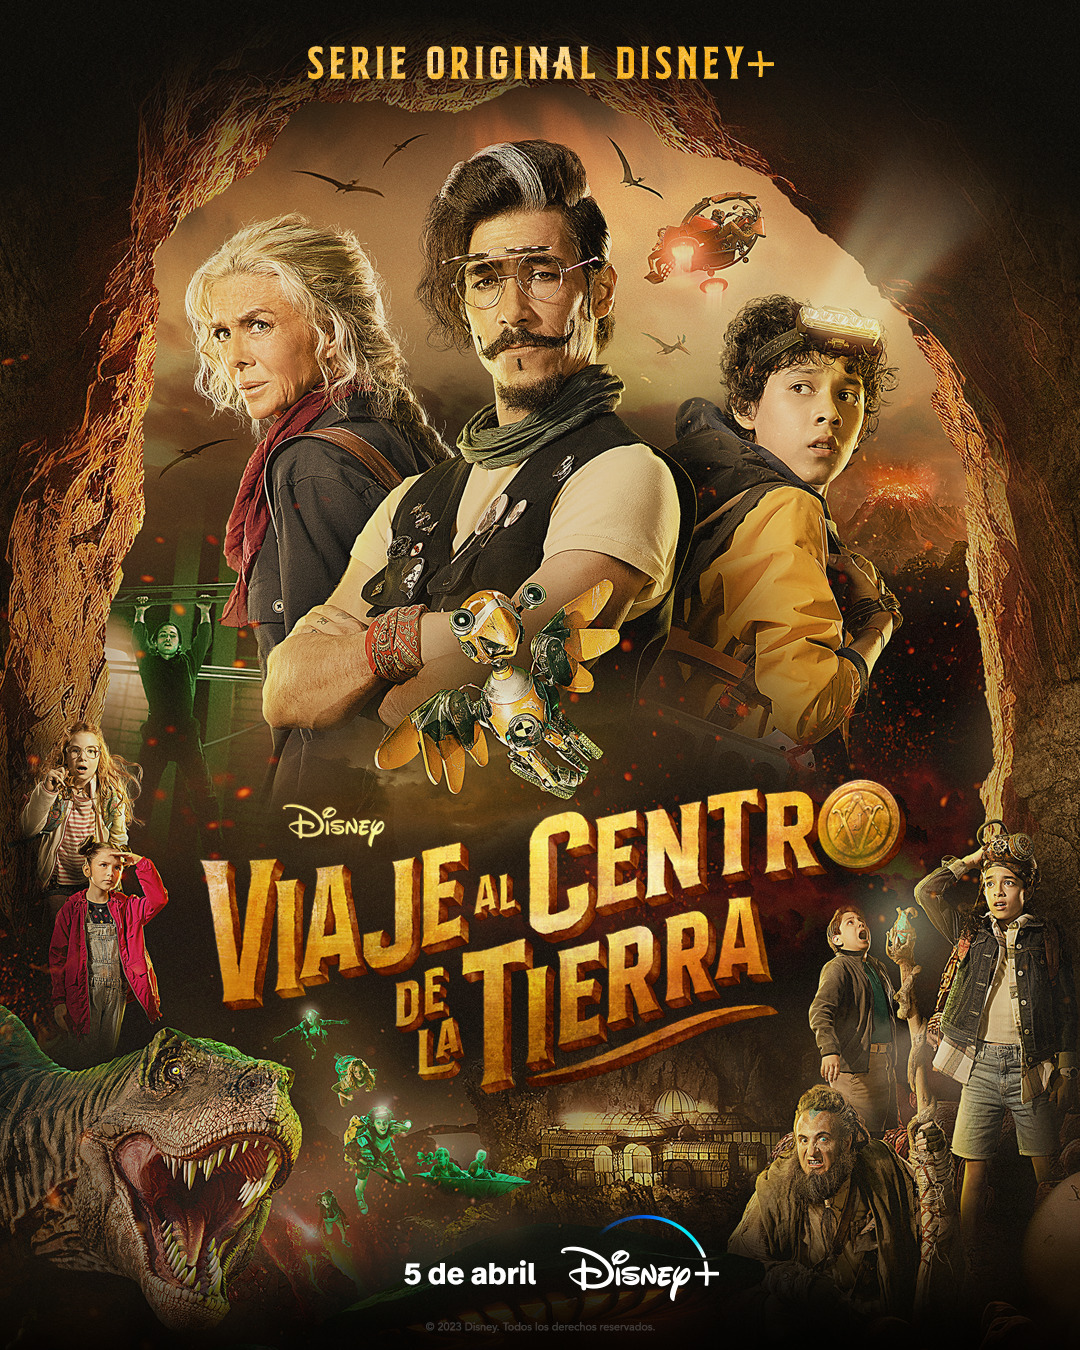 Extra Large Movie Poster Image for Viaje al centro de la tierra (#2 of 8)